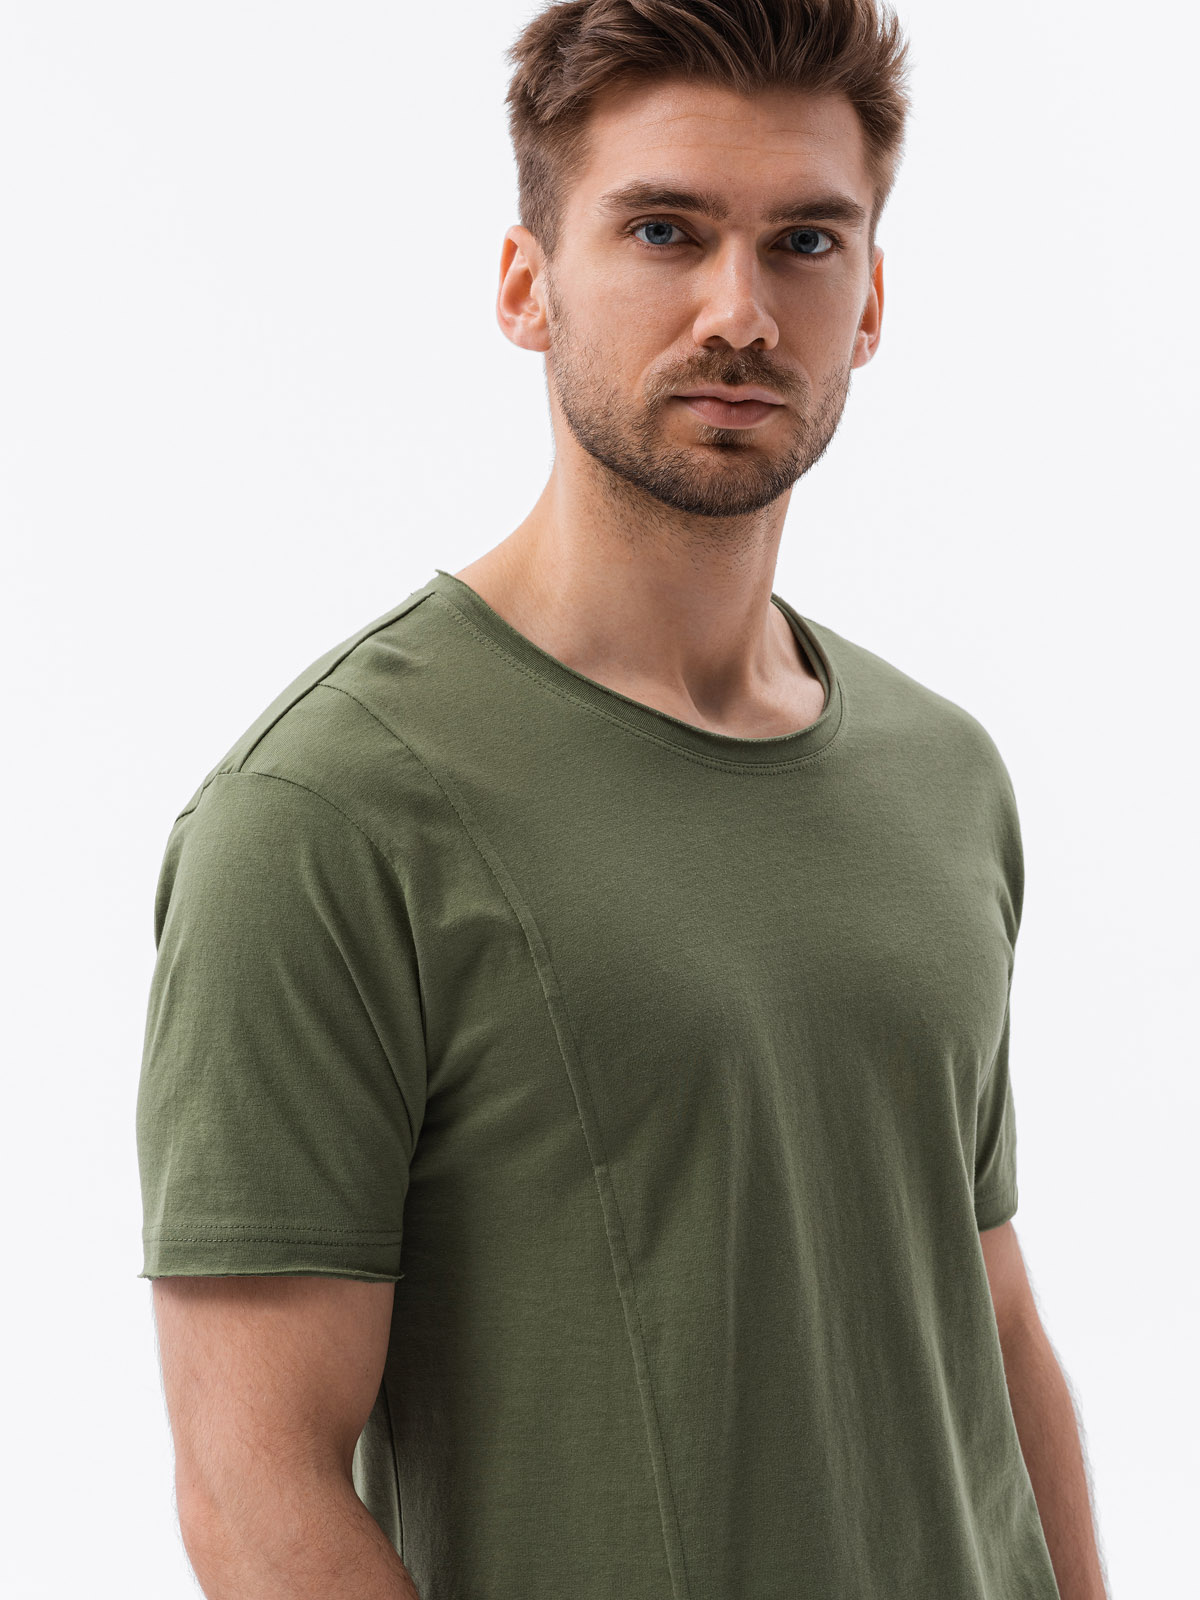 Men's plain t-shirt - khaki S1378 | Ombre.com - Men's clothing online